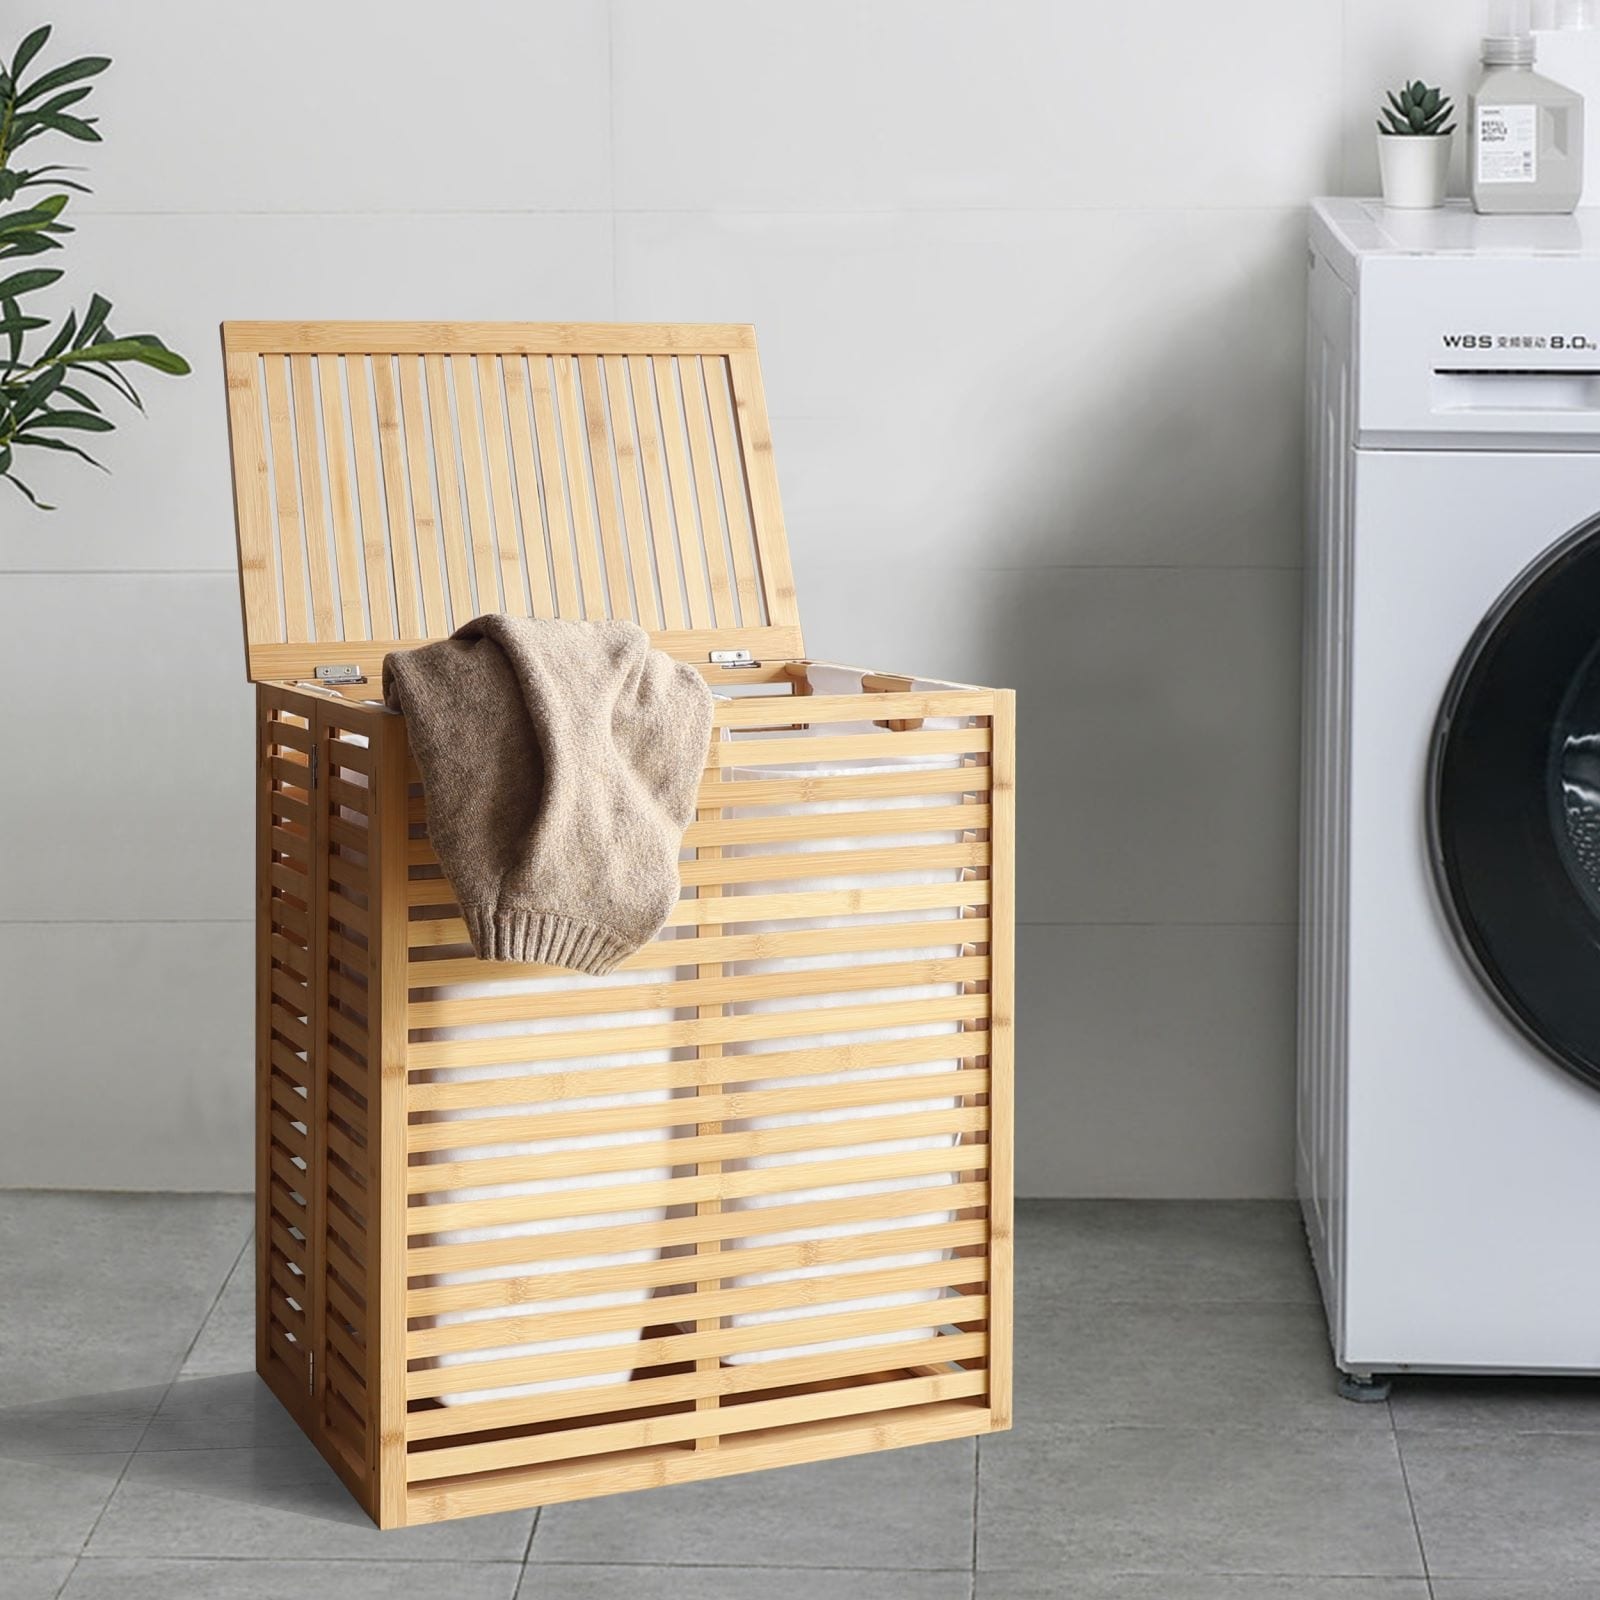 Kik Fix Laundry Basketbamboo Laundry Hamper With Lid - Giant